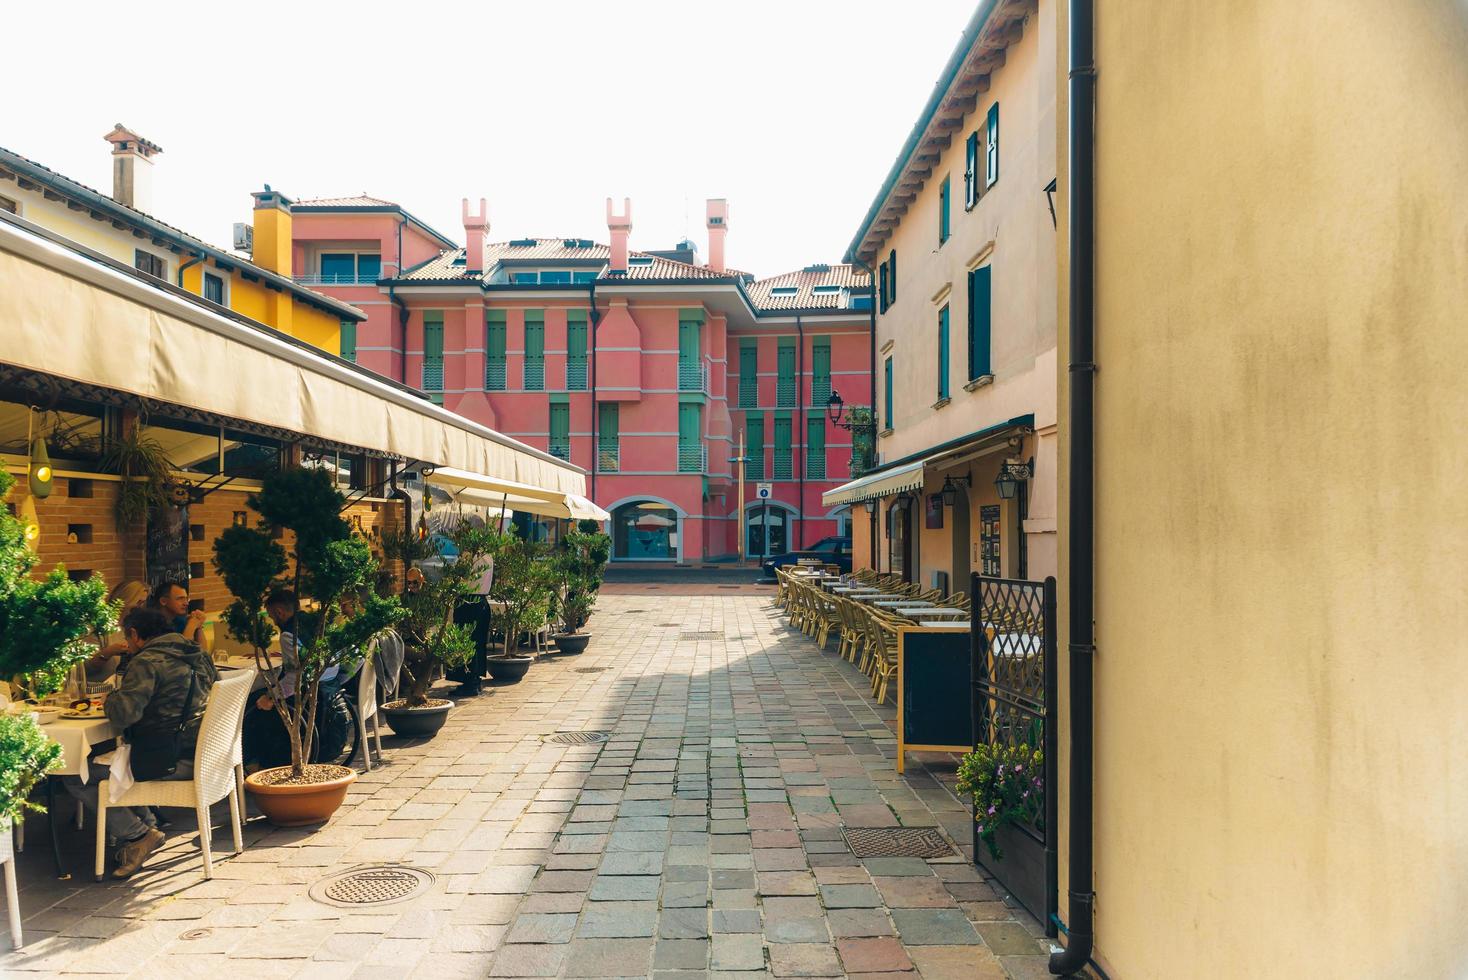 caorle, italia 2017- distretto turistico della vecchia città provinciale di caorle in italia foto